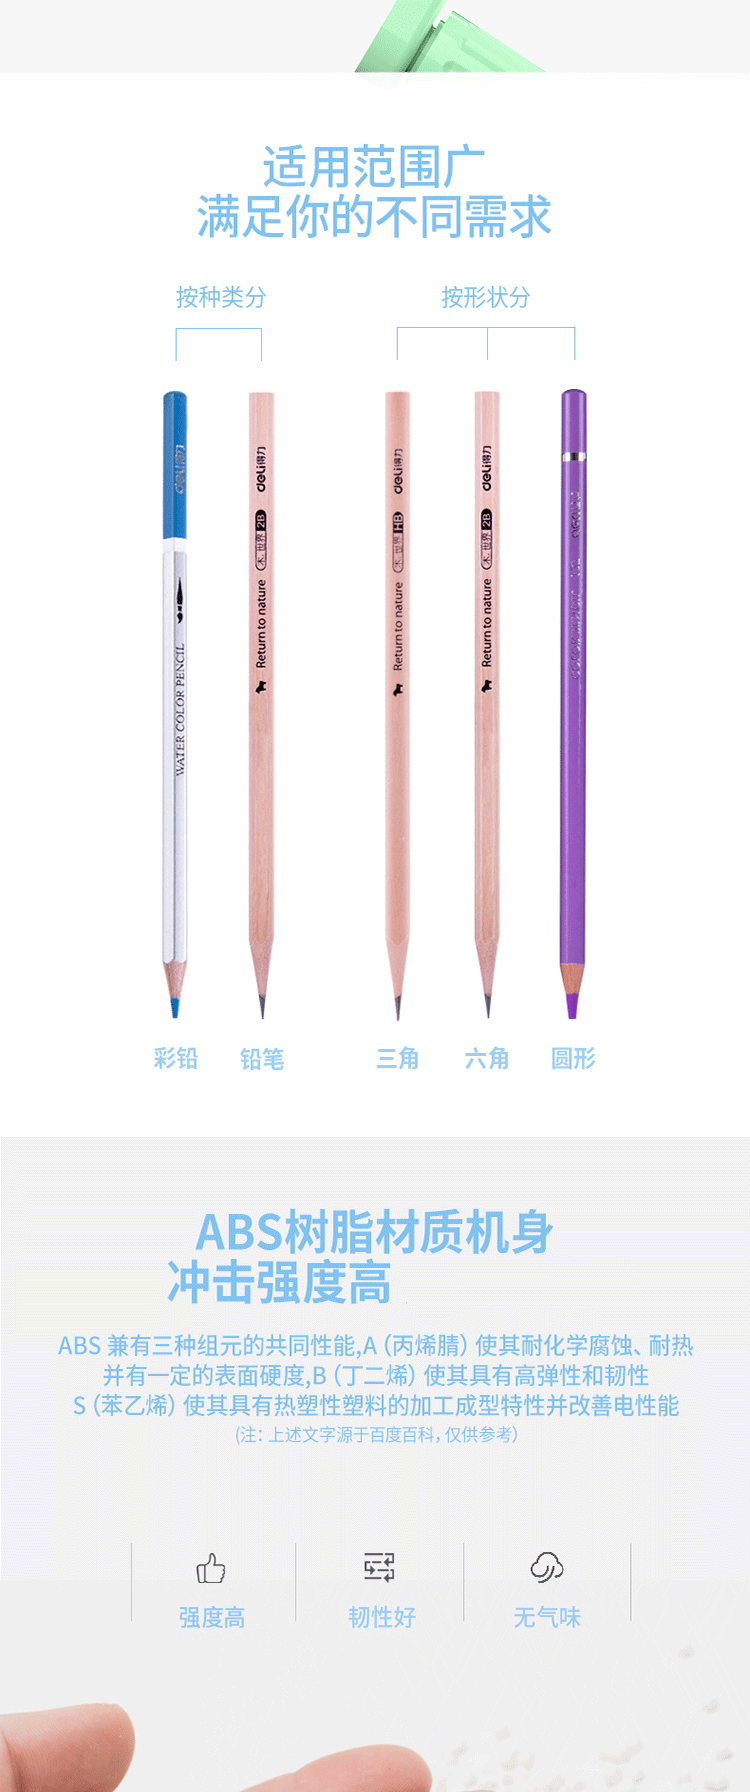 得力/deli 71154自动进笔削笔机手摇儿童削笔器学生清新可爱铅笔削笔刀